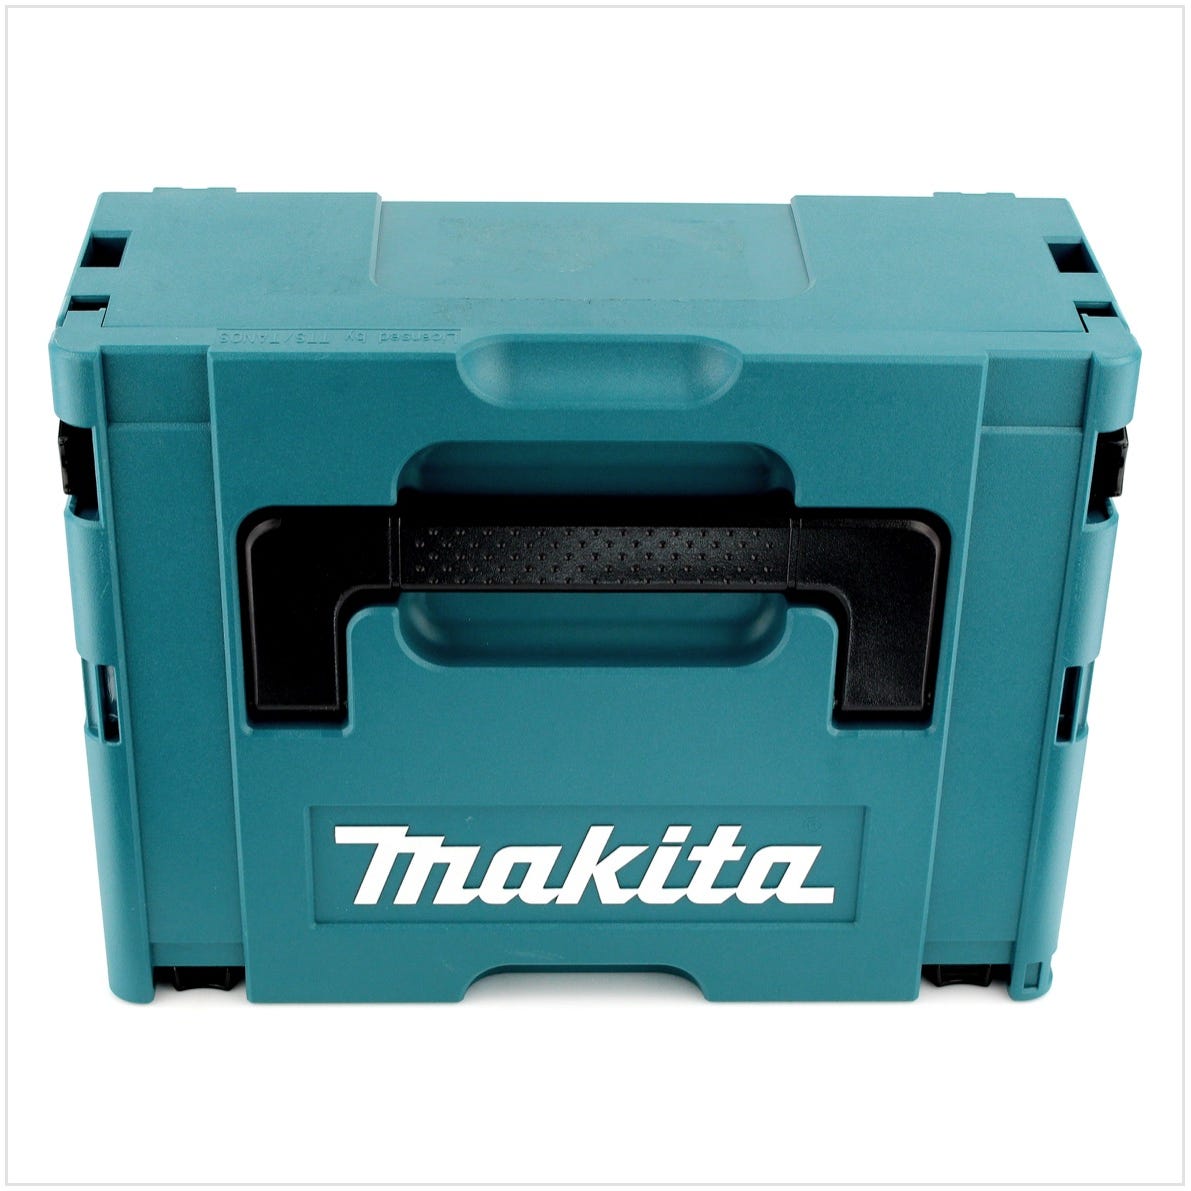 Makita DTW 1001 RTJ 18 V Li-Ion Brushless Boulonneuse à chocs sans fil avec Boîtier Makpac + 2x Batteries BL 1850 5,0 Ah + Chargeur rapide DC 18 RC 2